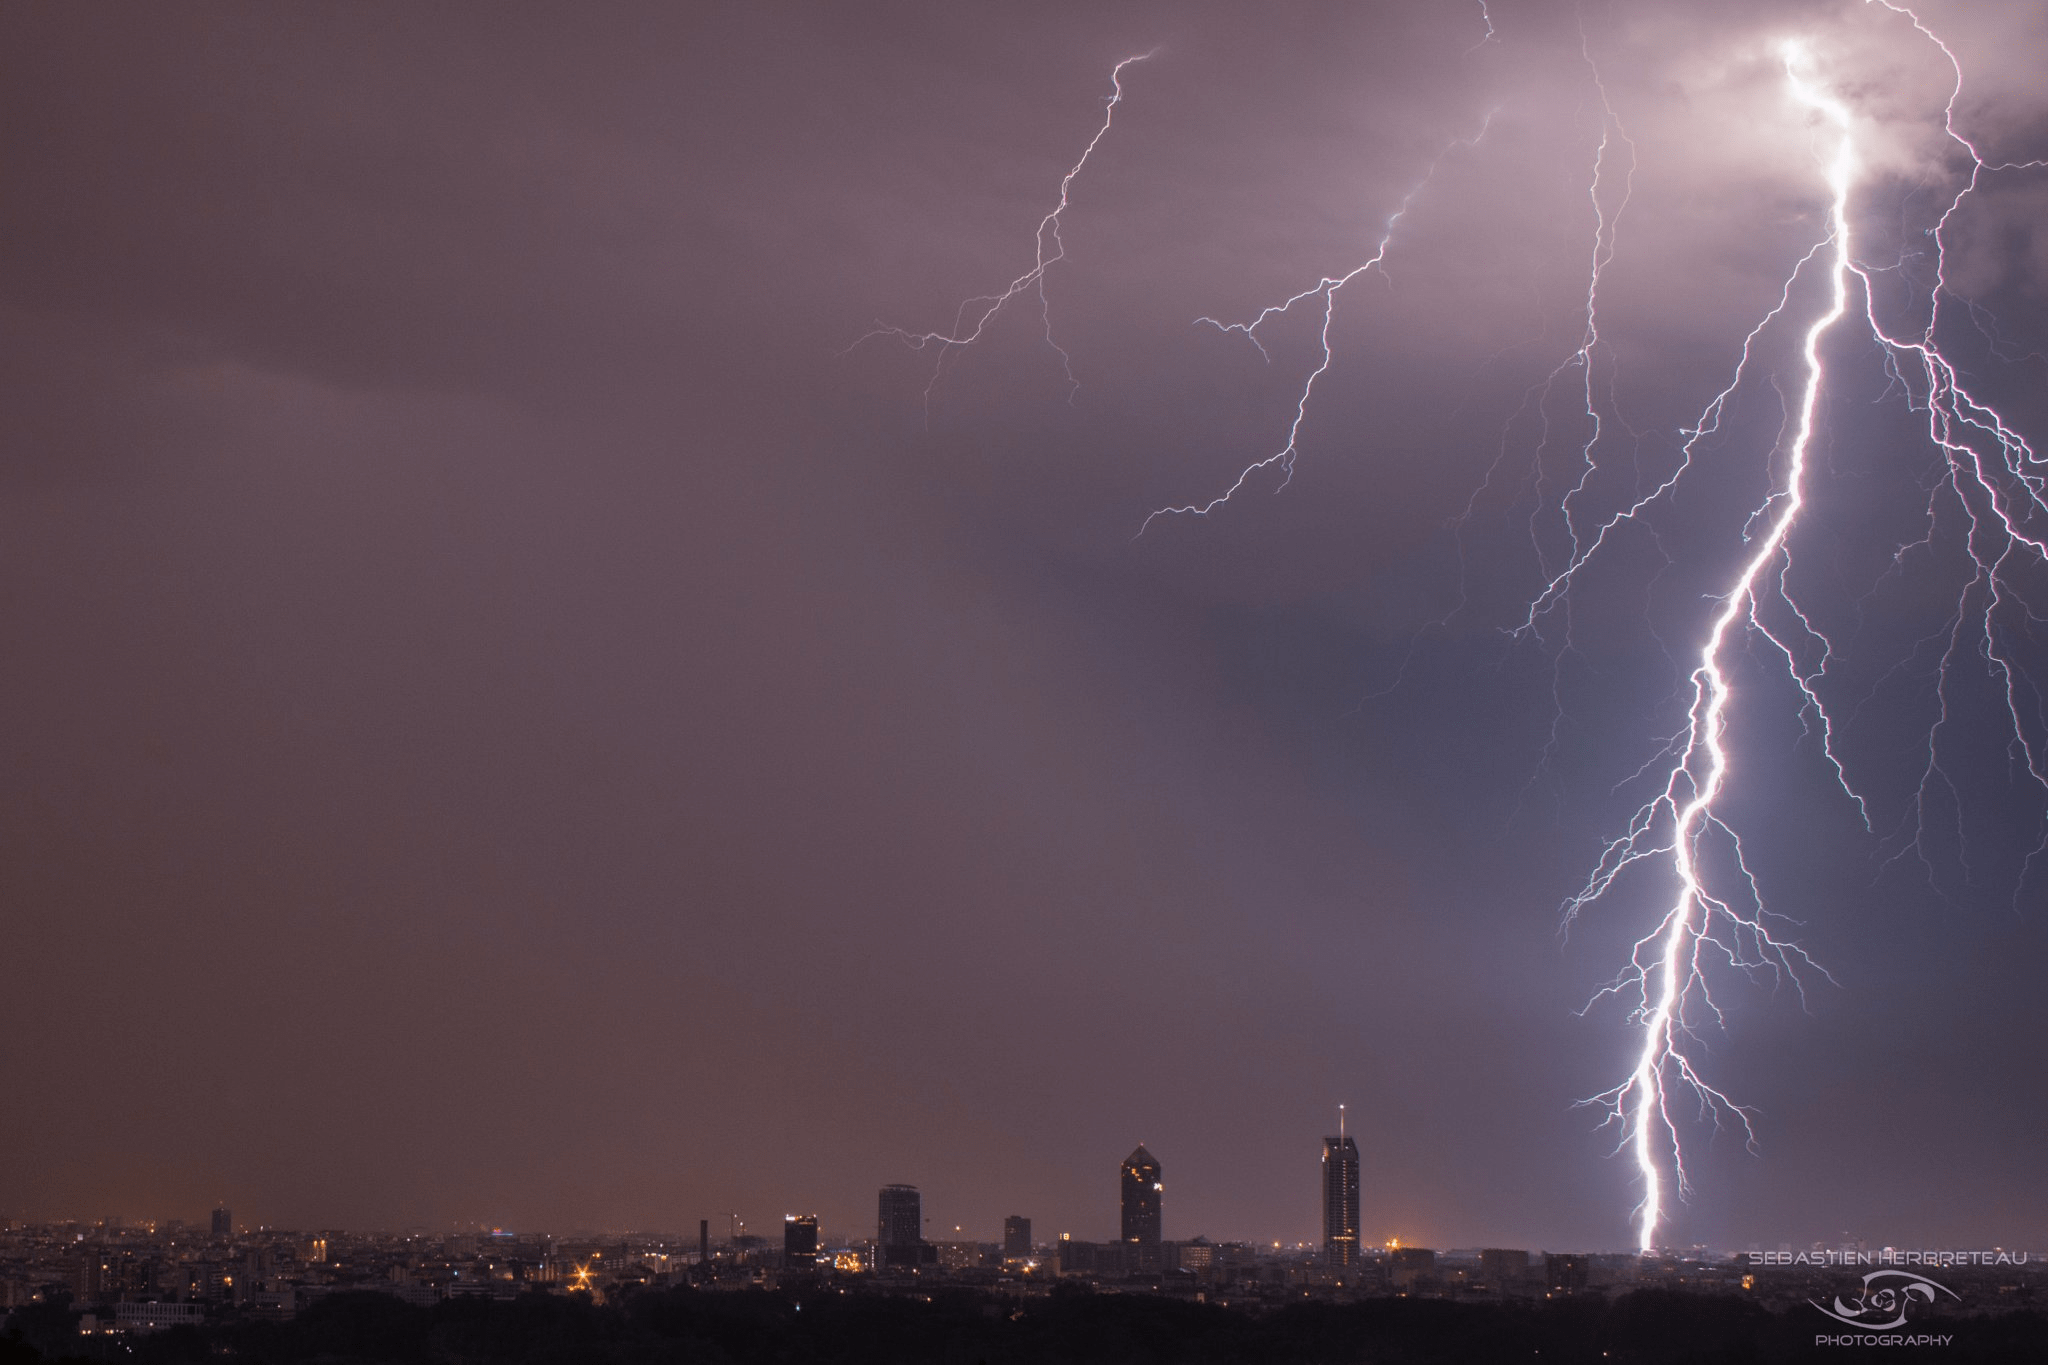 Lyon sous l'orage en soirée. - 22/07/2017 21:00 - Sébastien HERBRETEAU